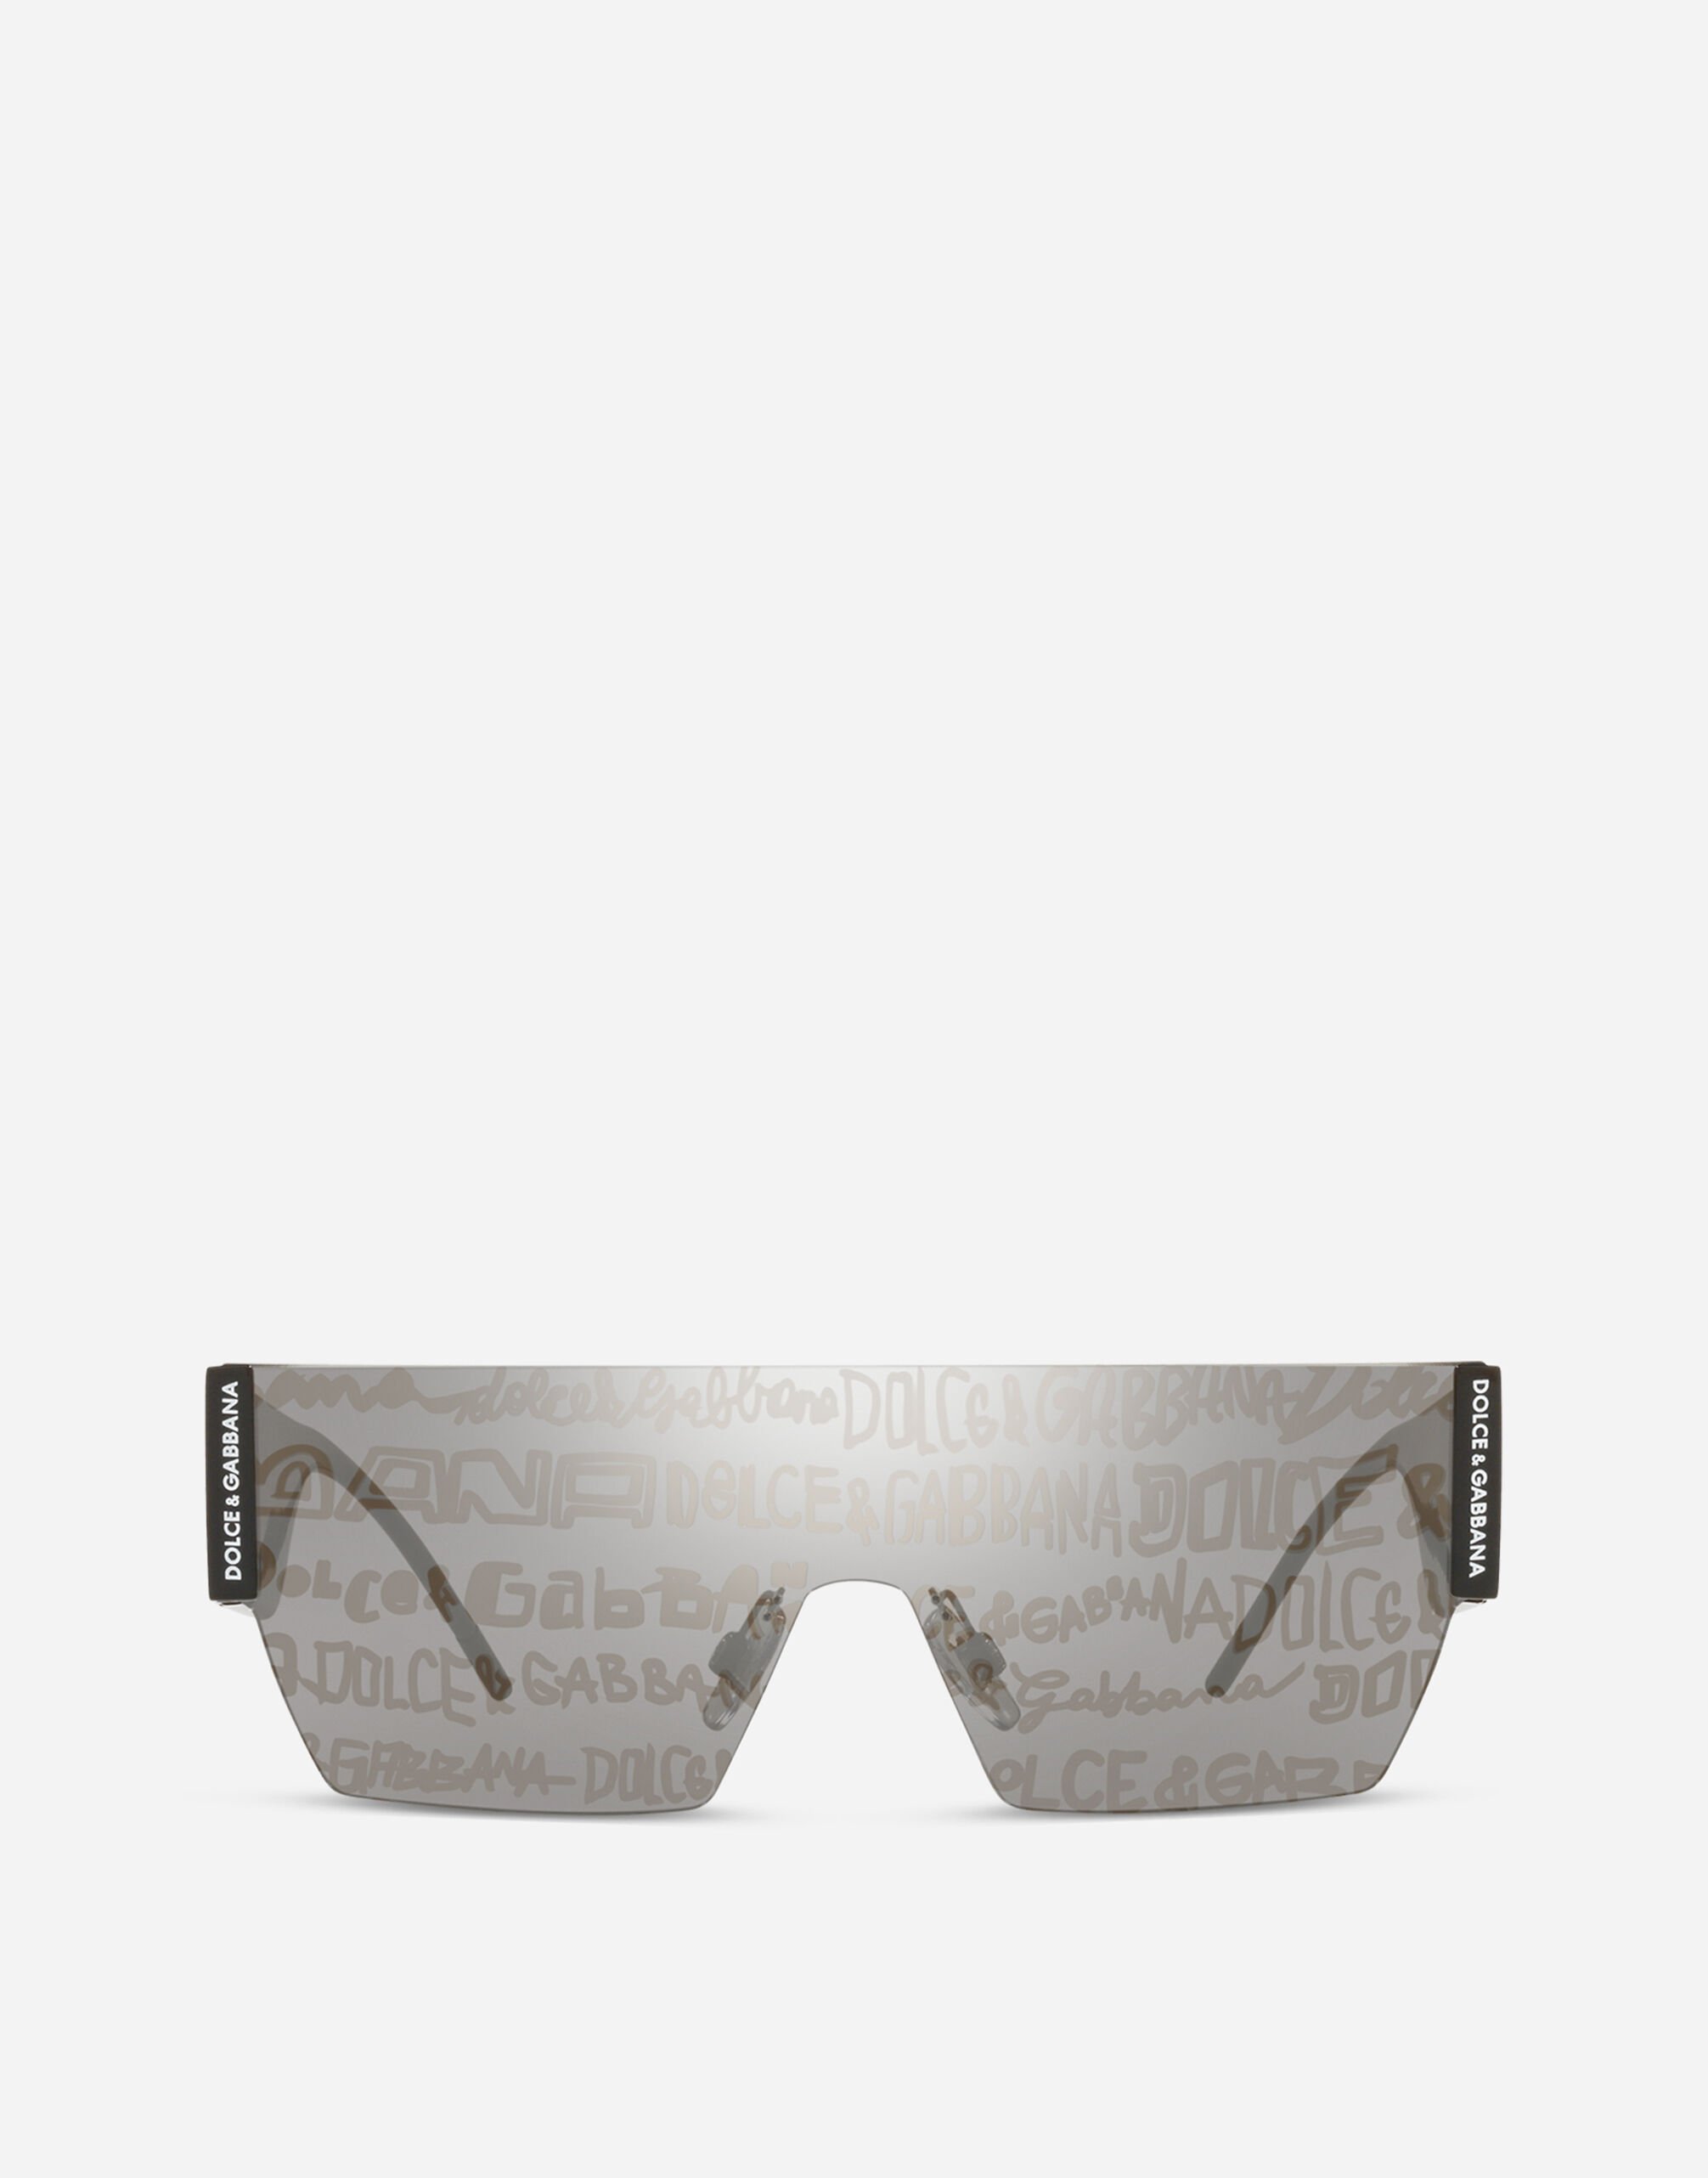 Dolce & Gabbana Dna Graffiti sunglasses Black VG4390VP187